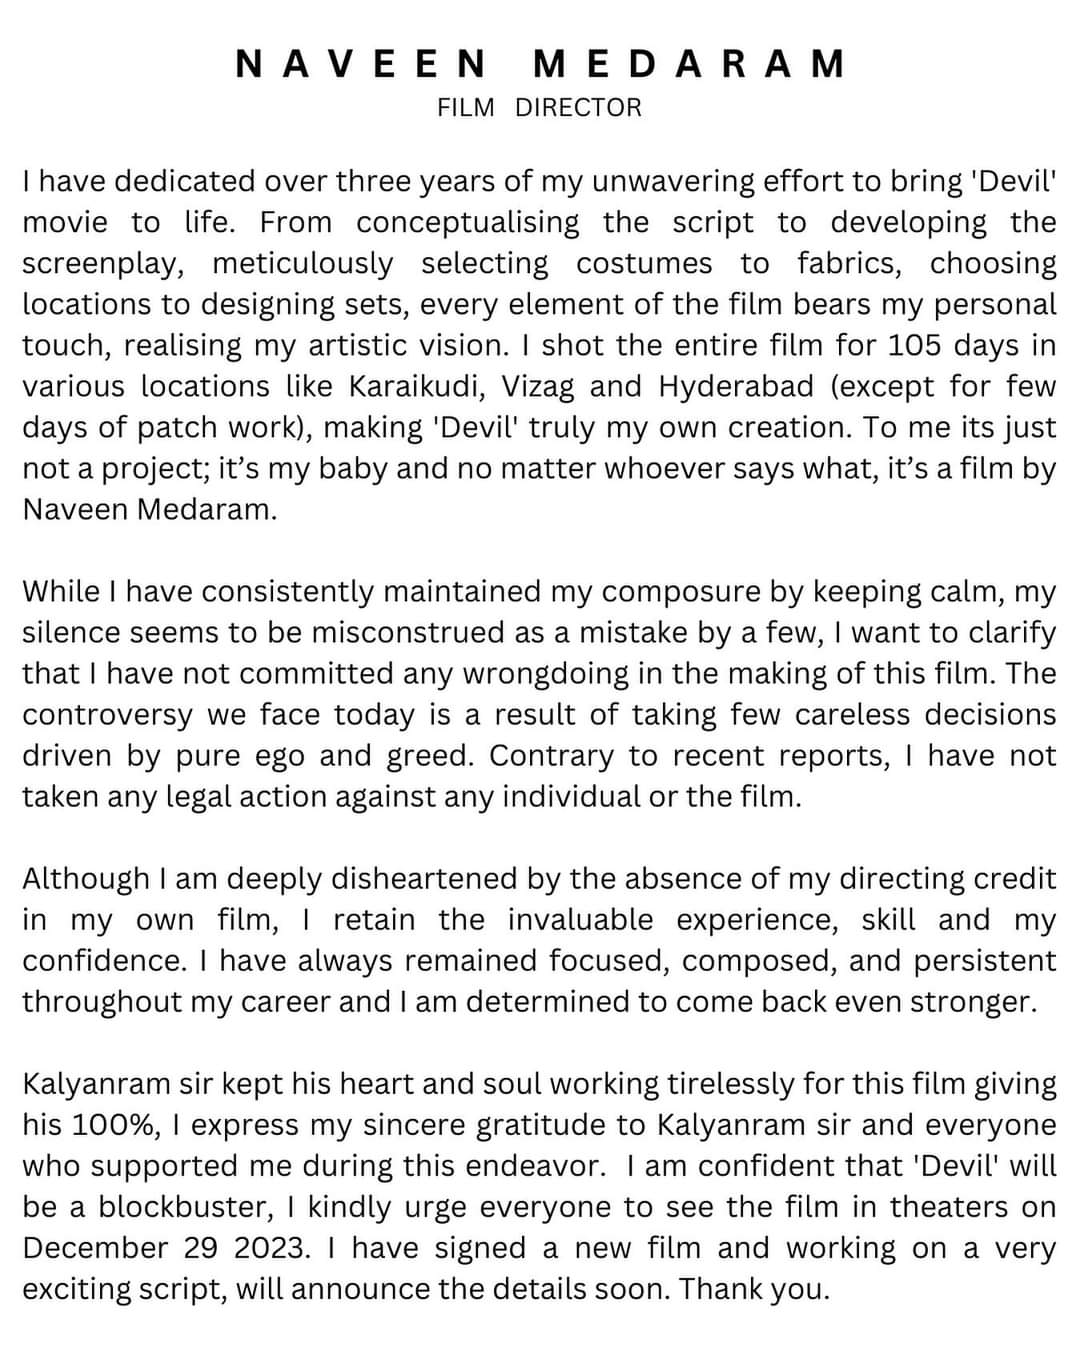 Devil Credits - Naveen Medaram s Open Letter .